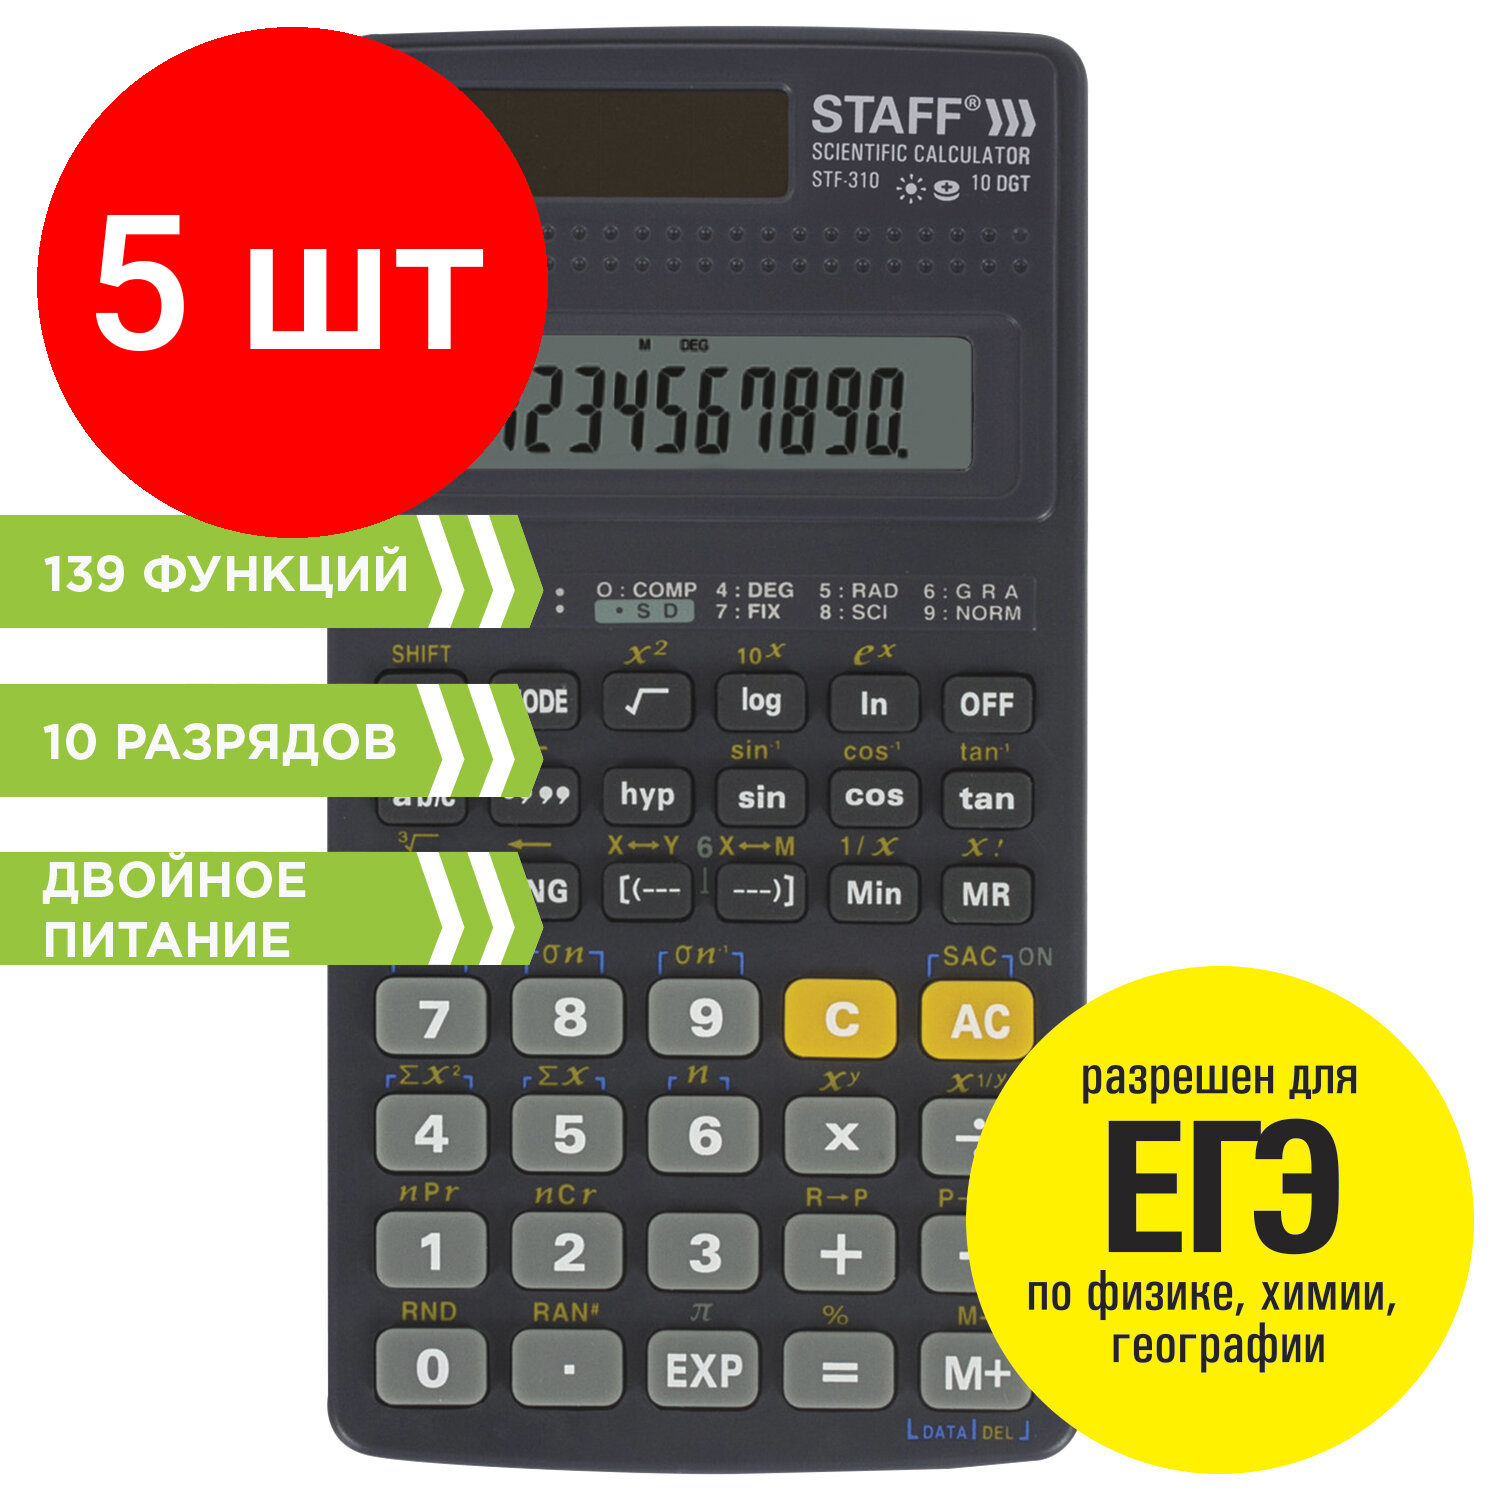 Комплект 5 шт, Калькулятор инженерный STAFF STF-310 (142х78 мм), 139 функций, 10+2 разрядов, двойное питание, 250279